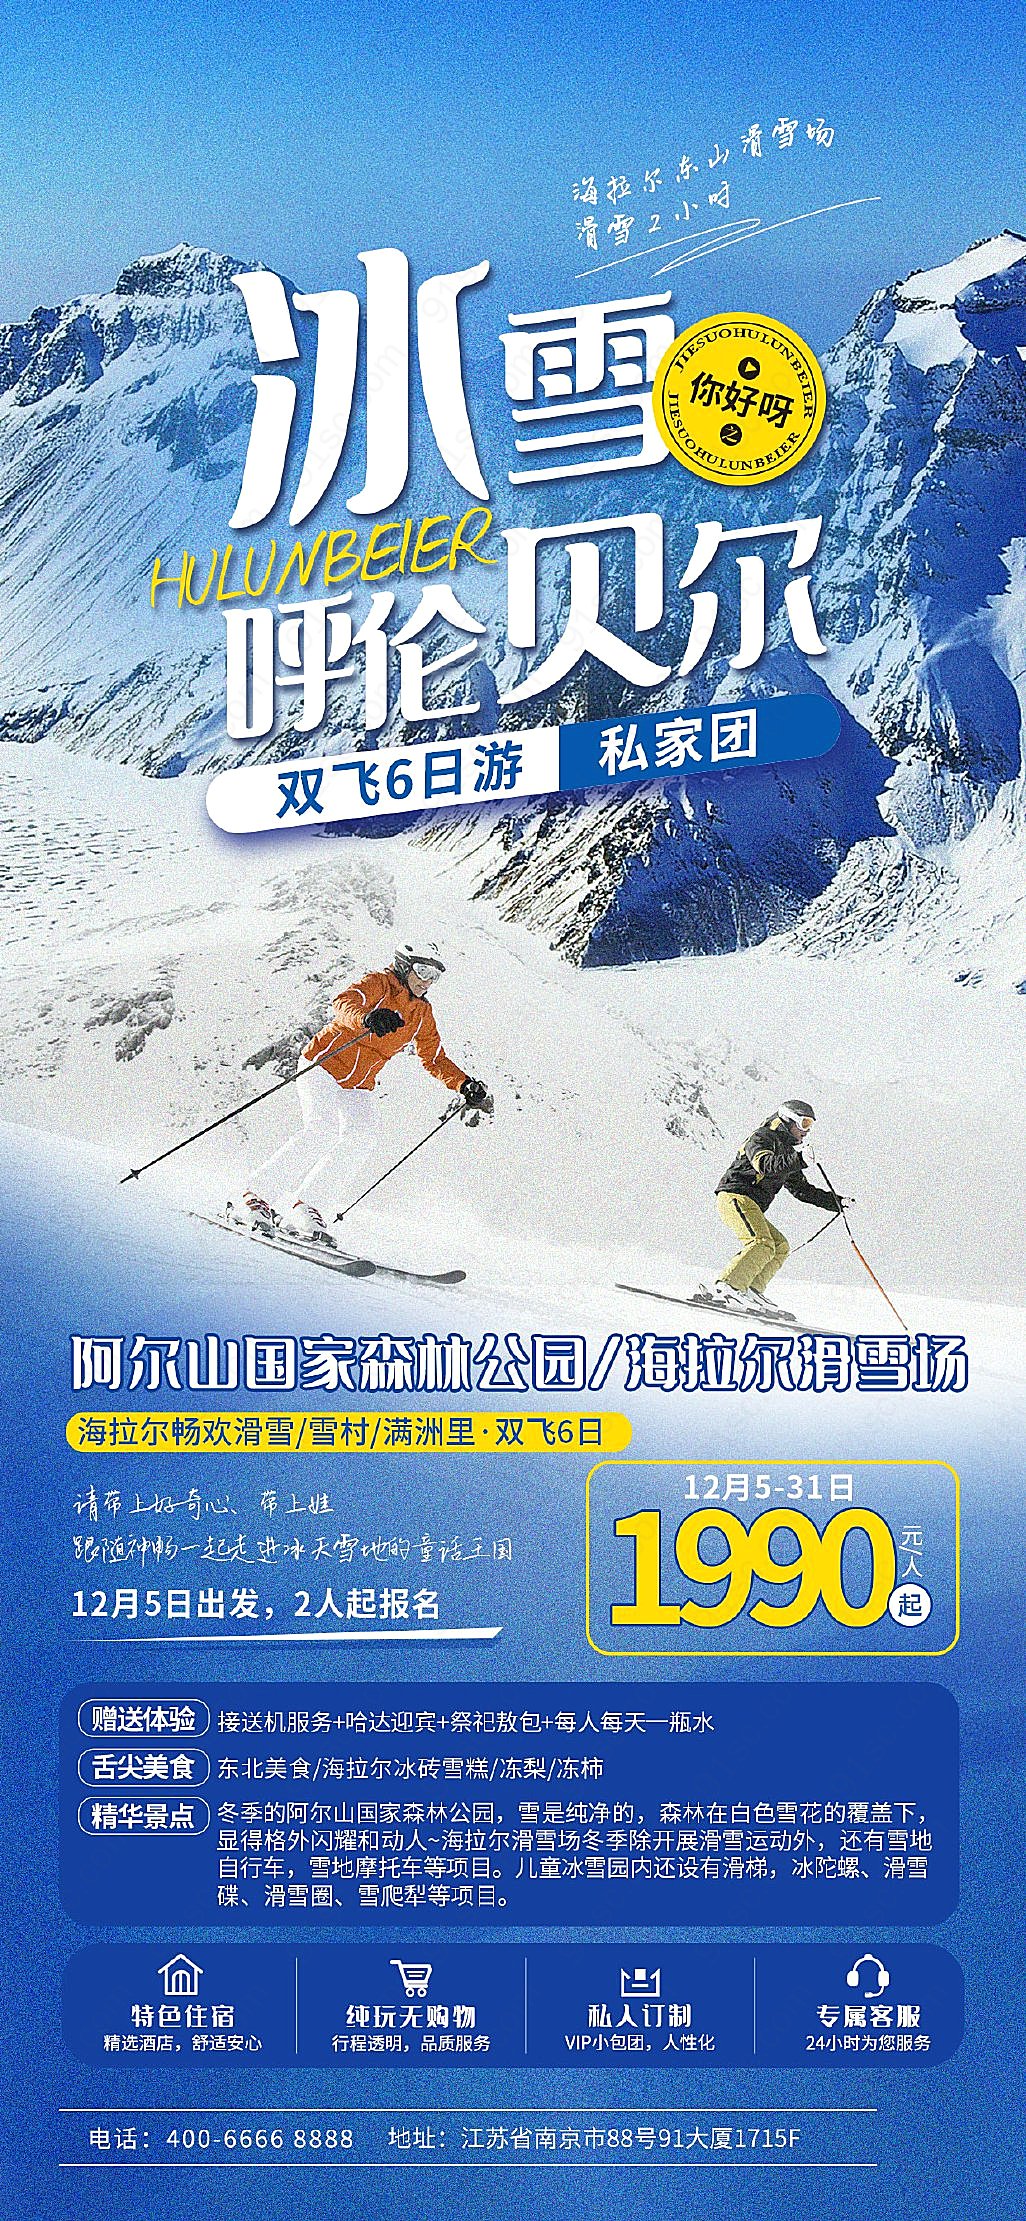 北方滑雪胜地广告感受冬日里的速度与激情手机海报手机营销图新媒体用图下载